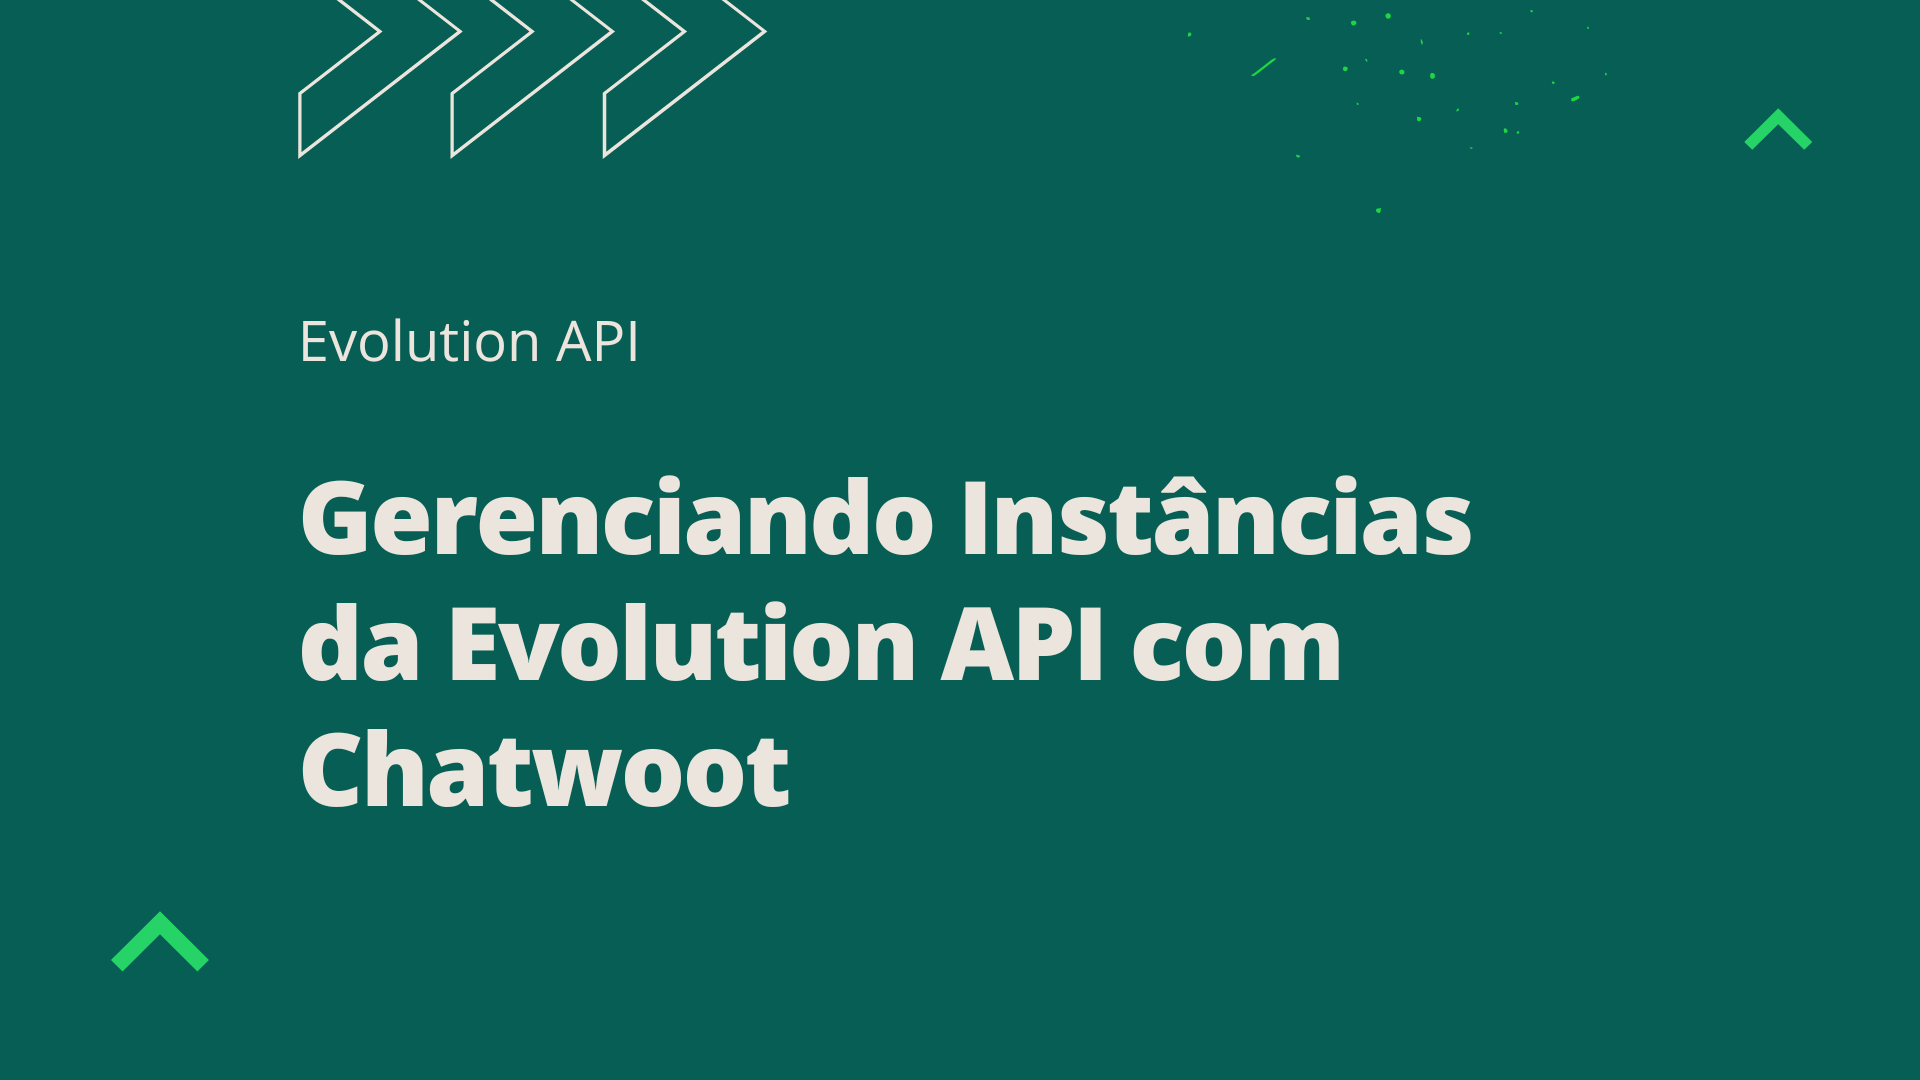 Gerenciando Instâncias da Evolution API com Chatwoot